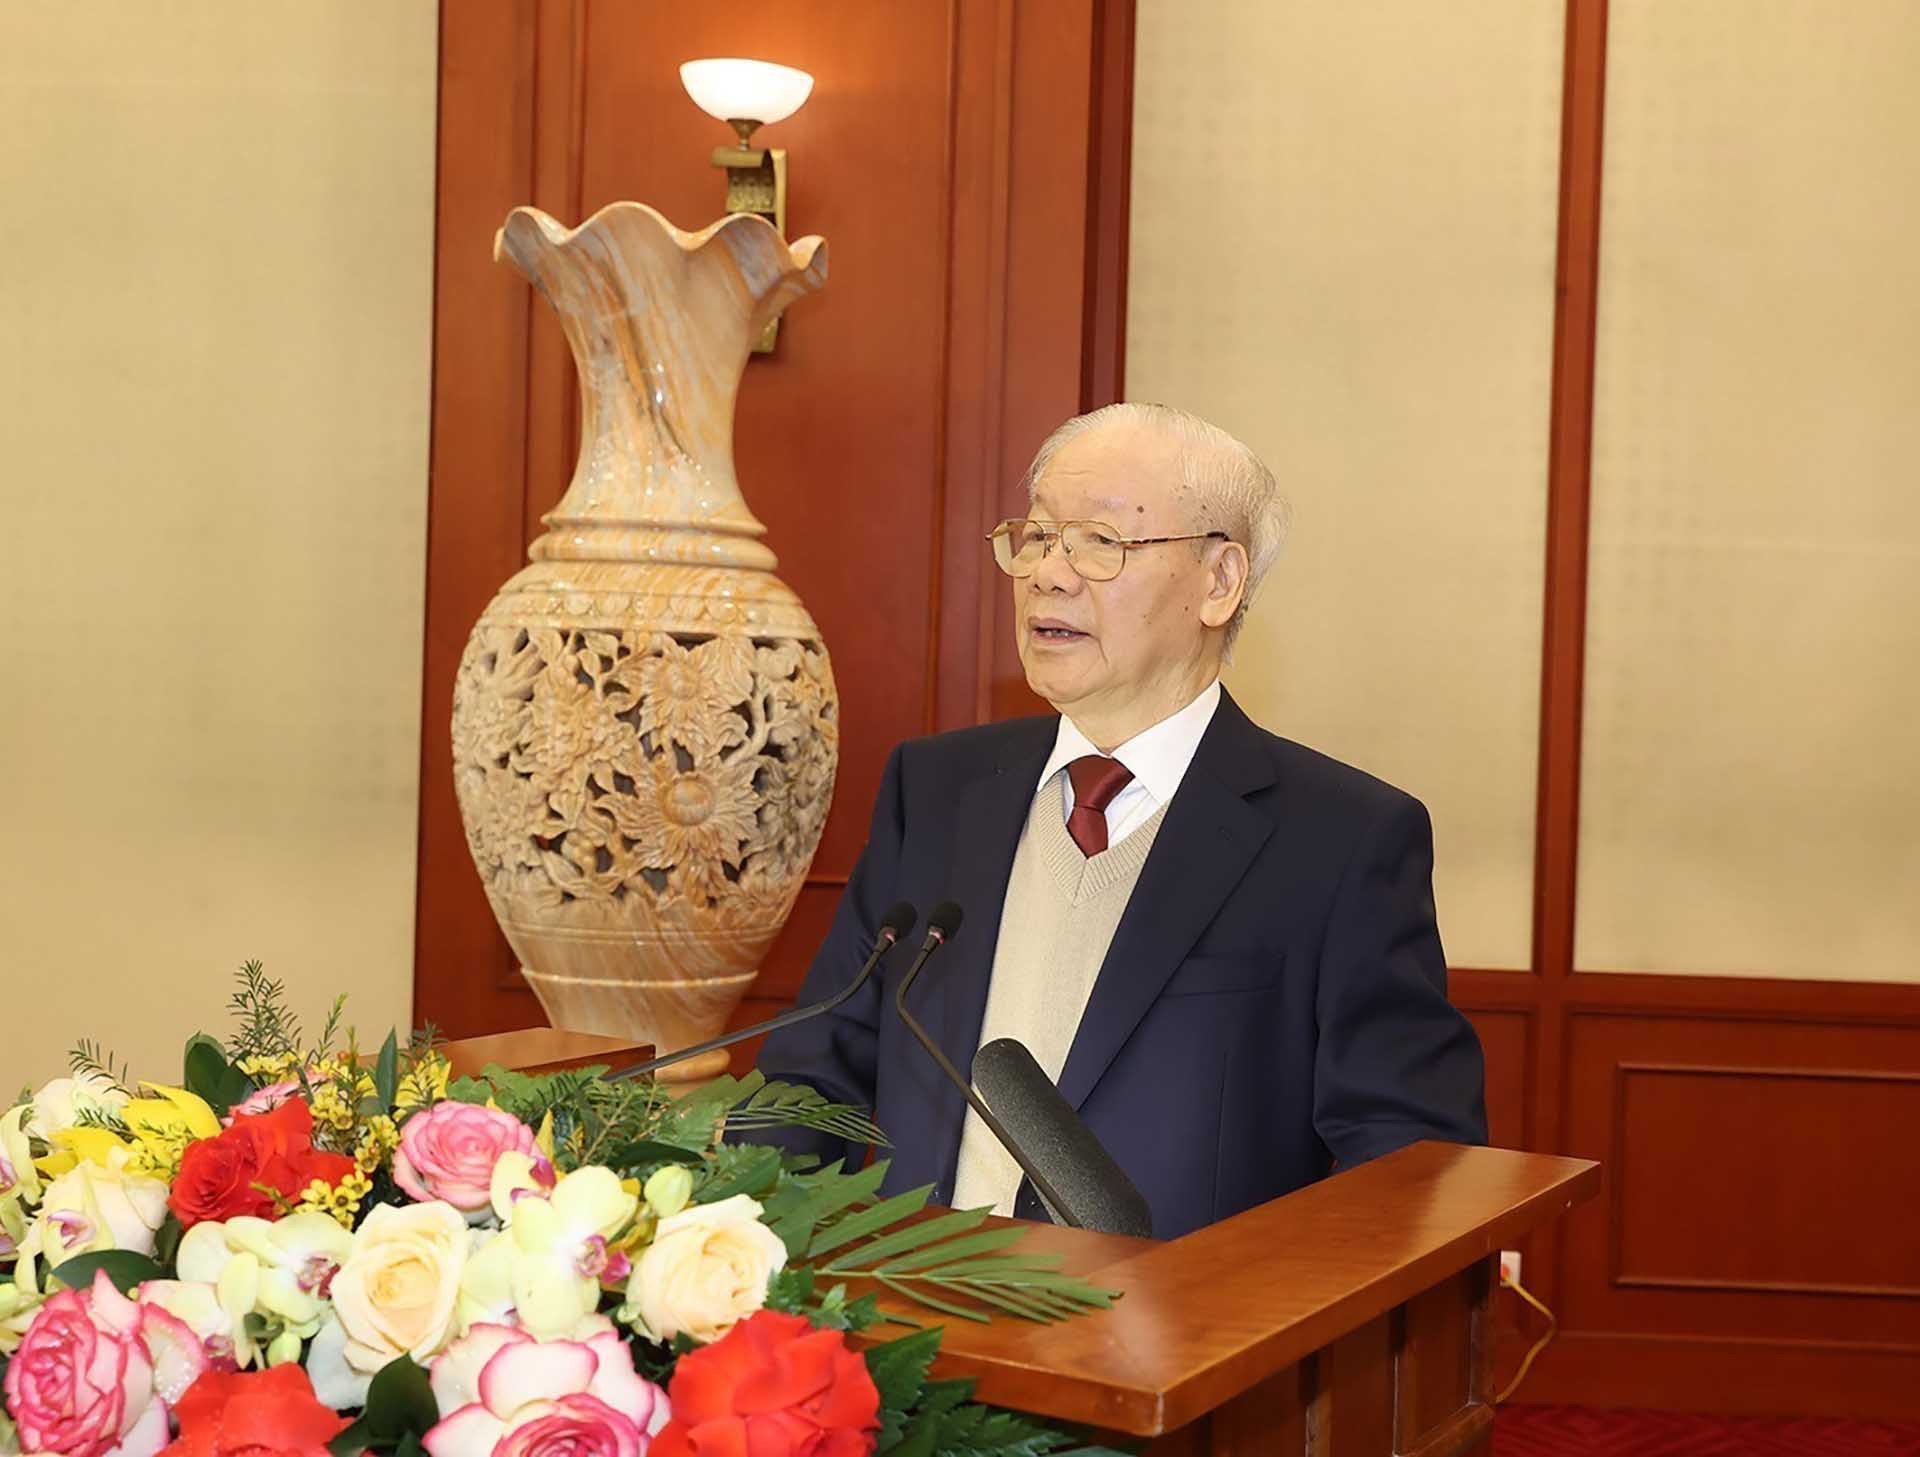 Tổng Bí thư Nguyễn Phú Trọng chủ trì phiên họp đầu tiên Tiểu ban Văn kiện Đại hội XIV của Đảng